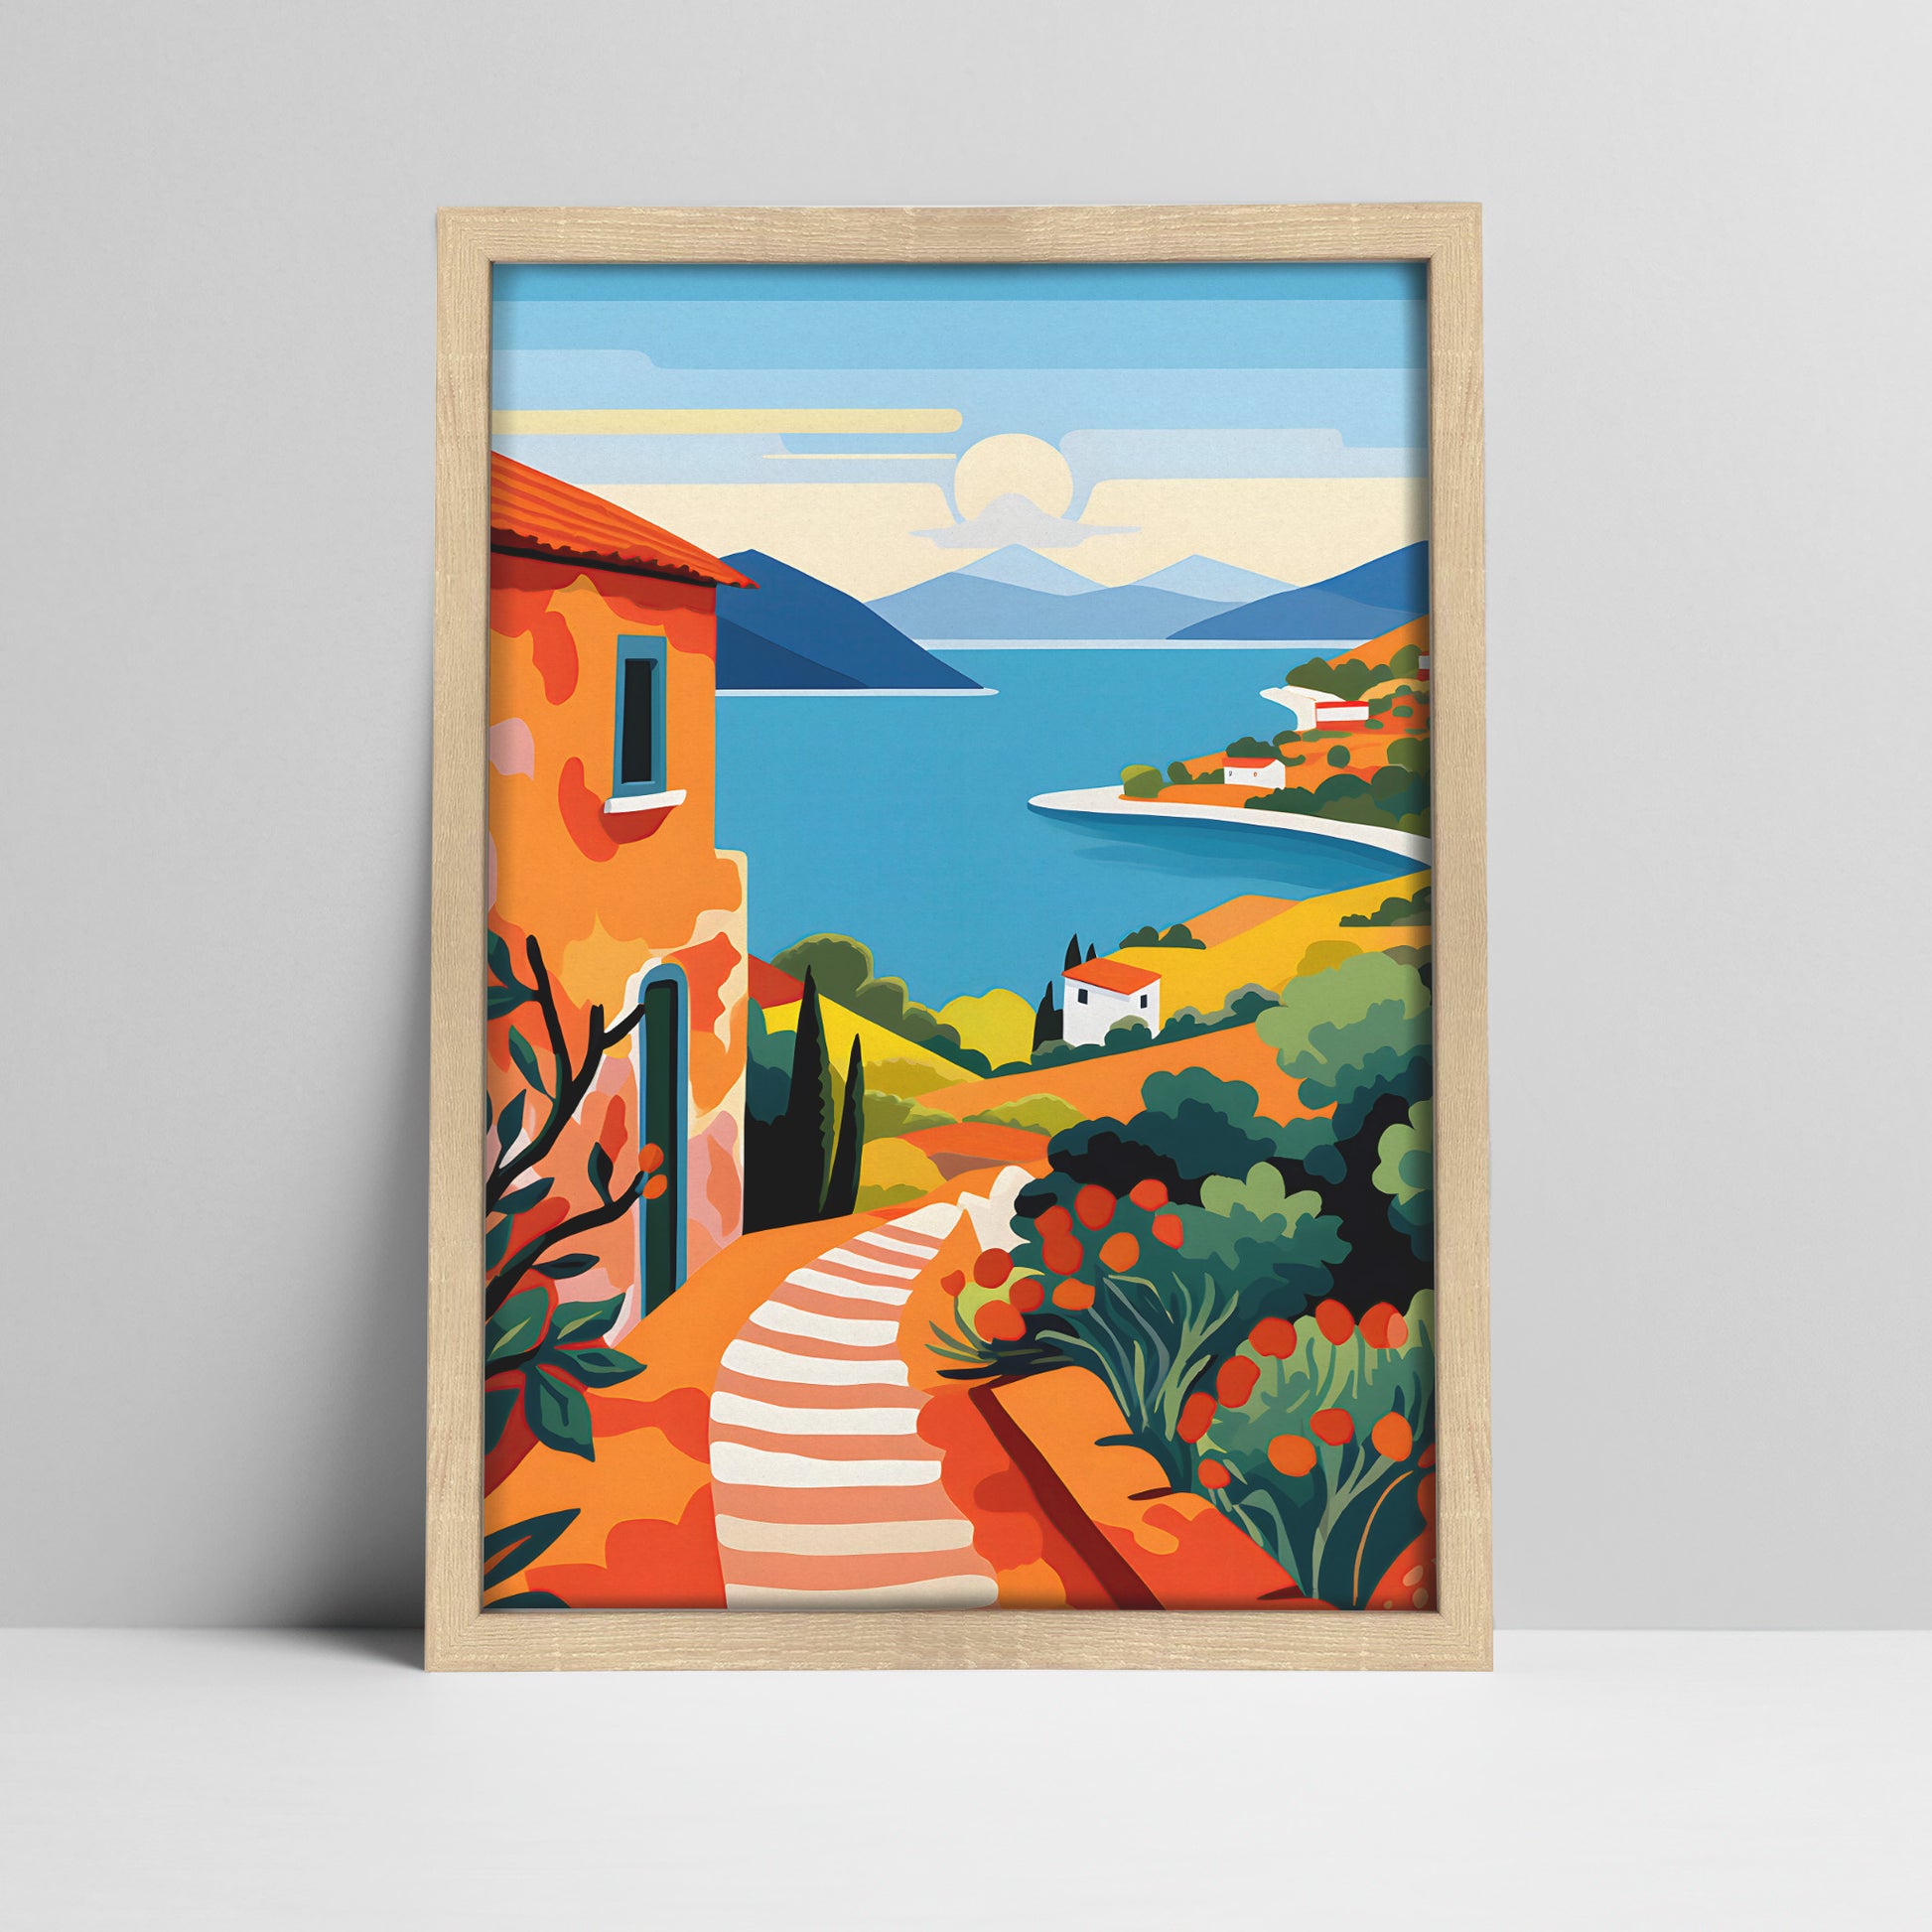 Art print of a mediterranean coastal village landscape illustration in a light wood frame